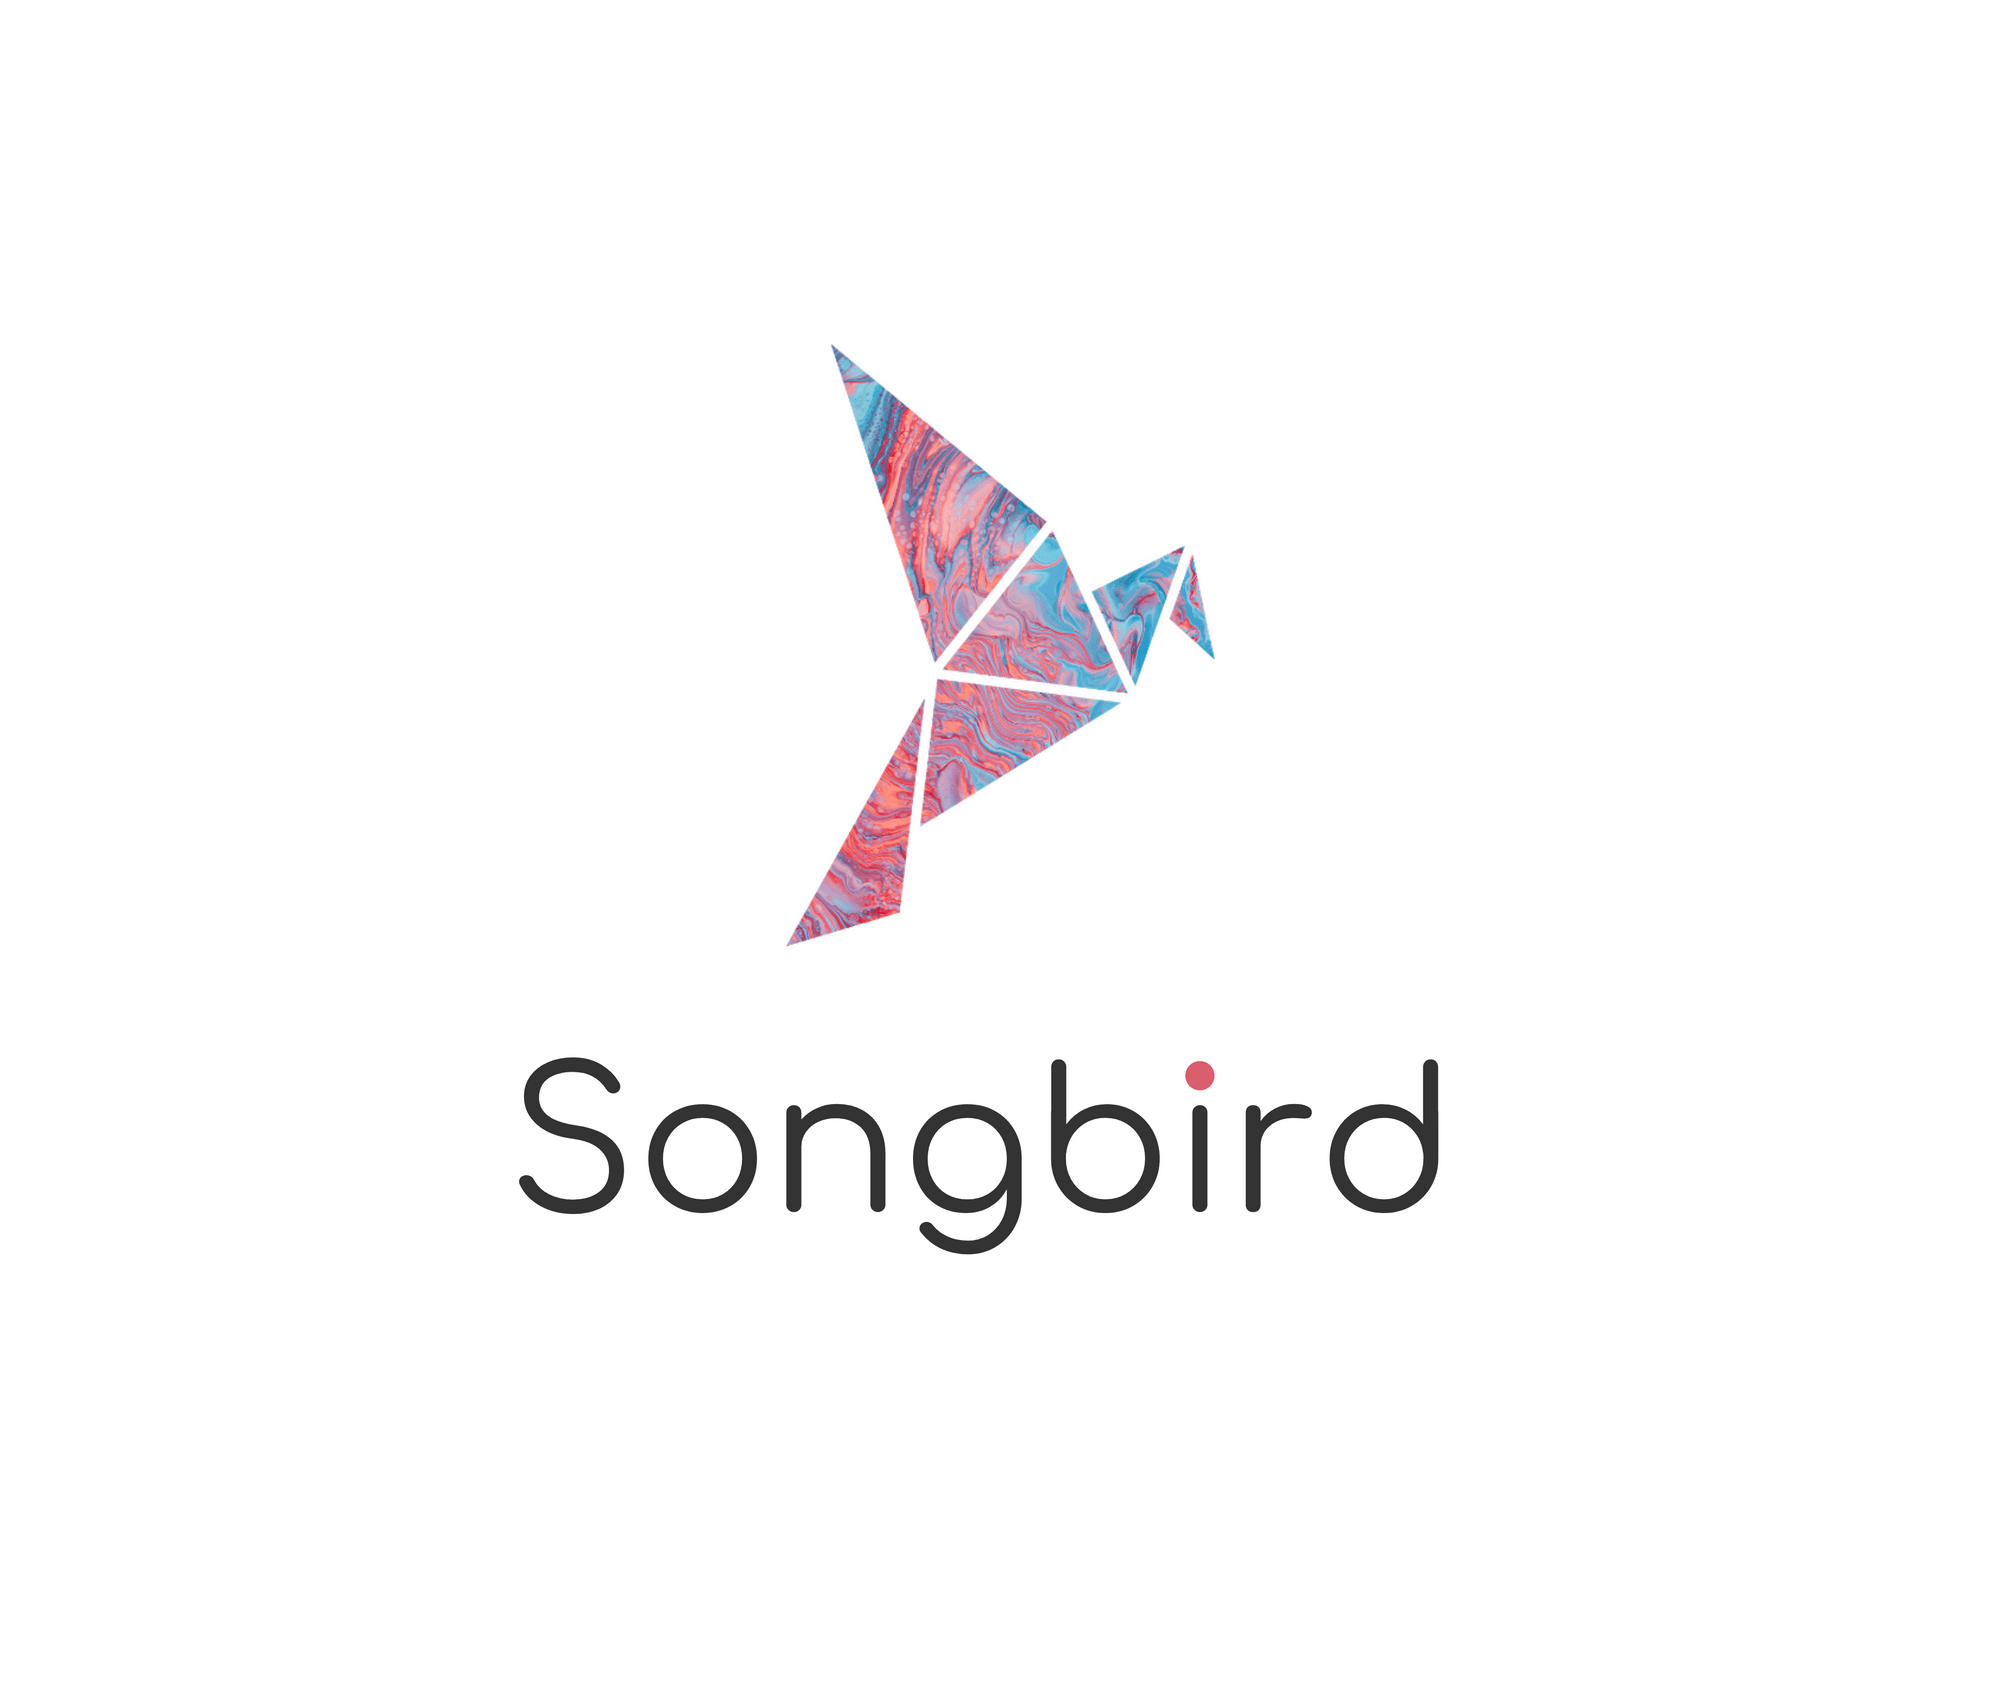 Flare/Songbird Integration